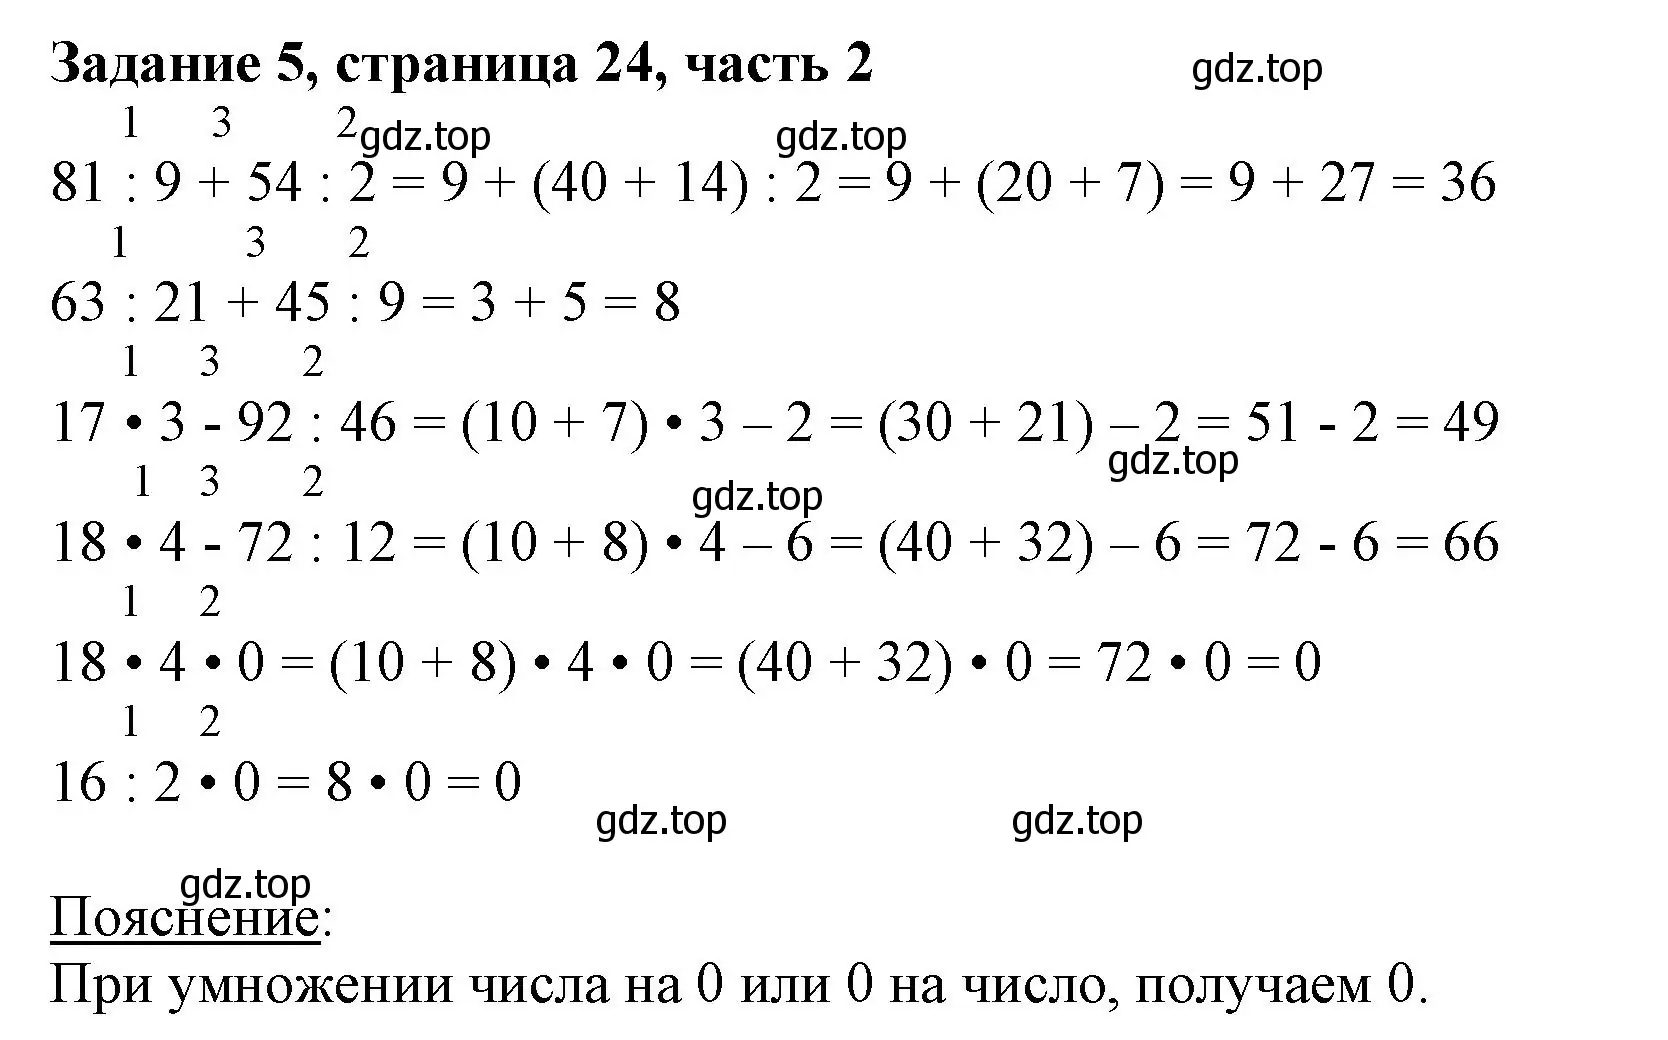 Решение номер 5 (страница 24) гдз по математике 3 класс Моро, Бантова, учебник 2 часть